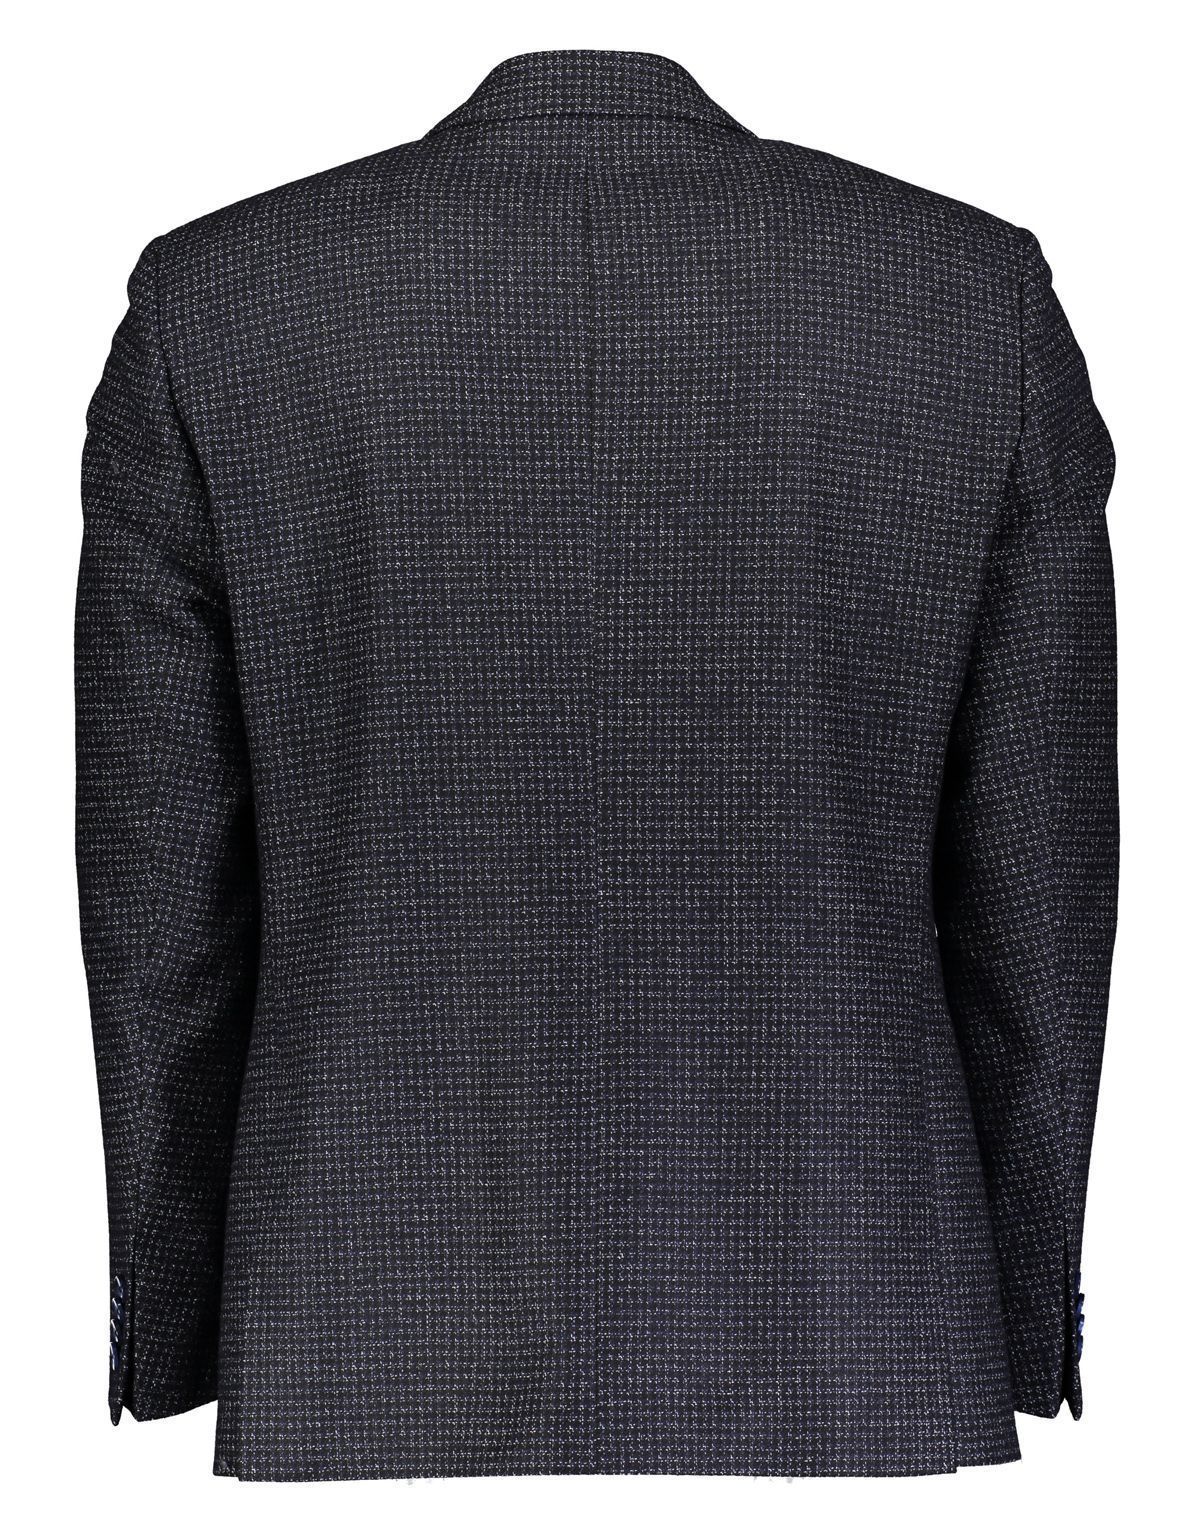 Пиджак мужской из шерсти в клетку Roy Robson с карманами, modern fit | купить в интернет-магазине Olymp-Men